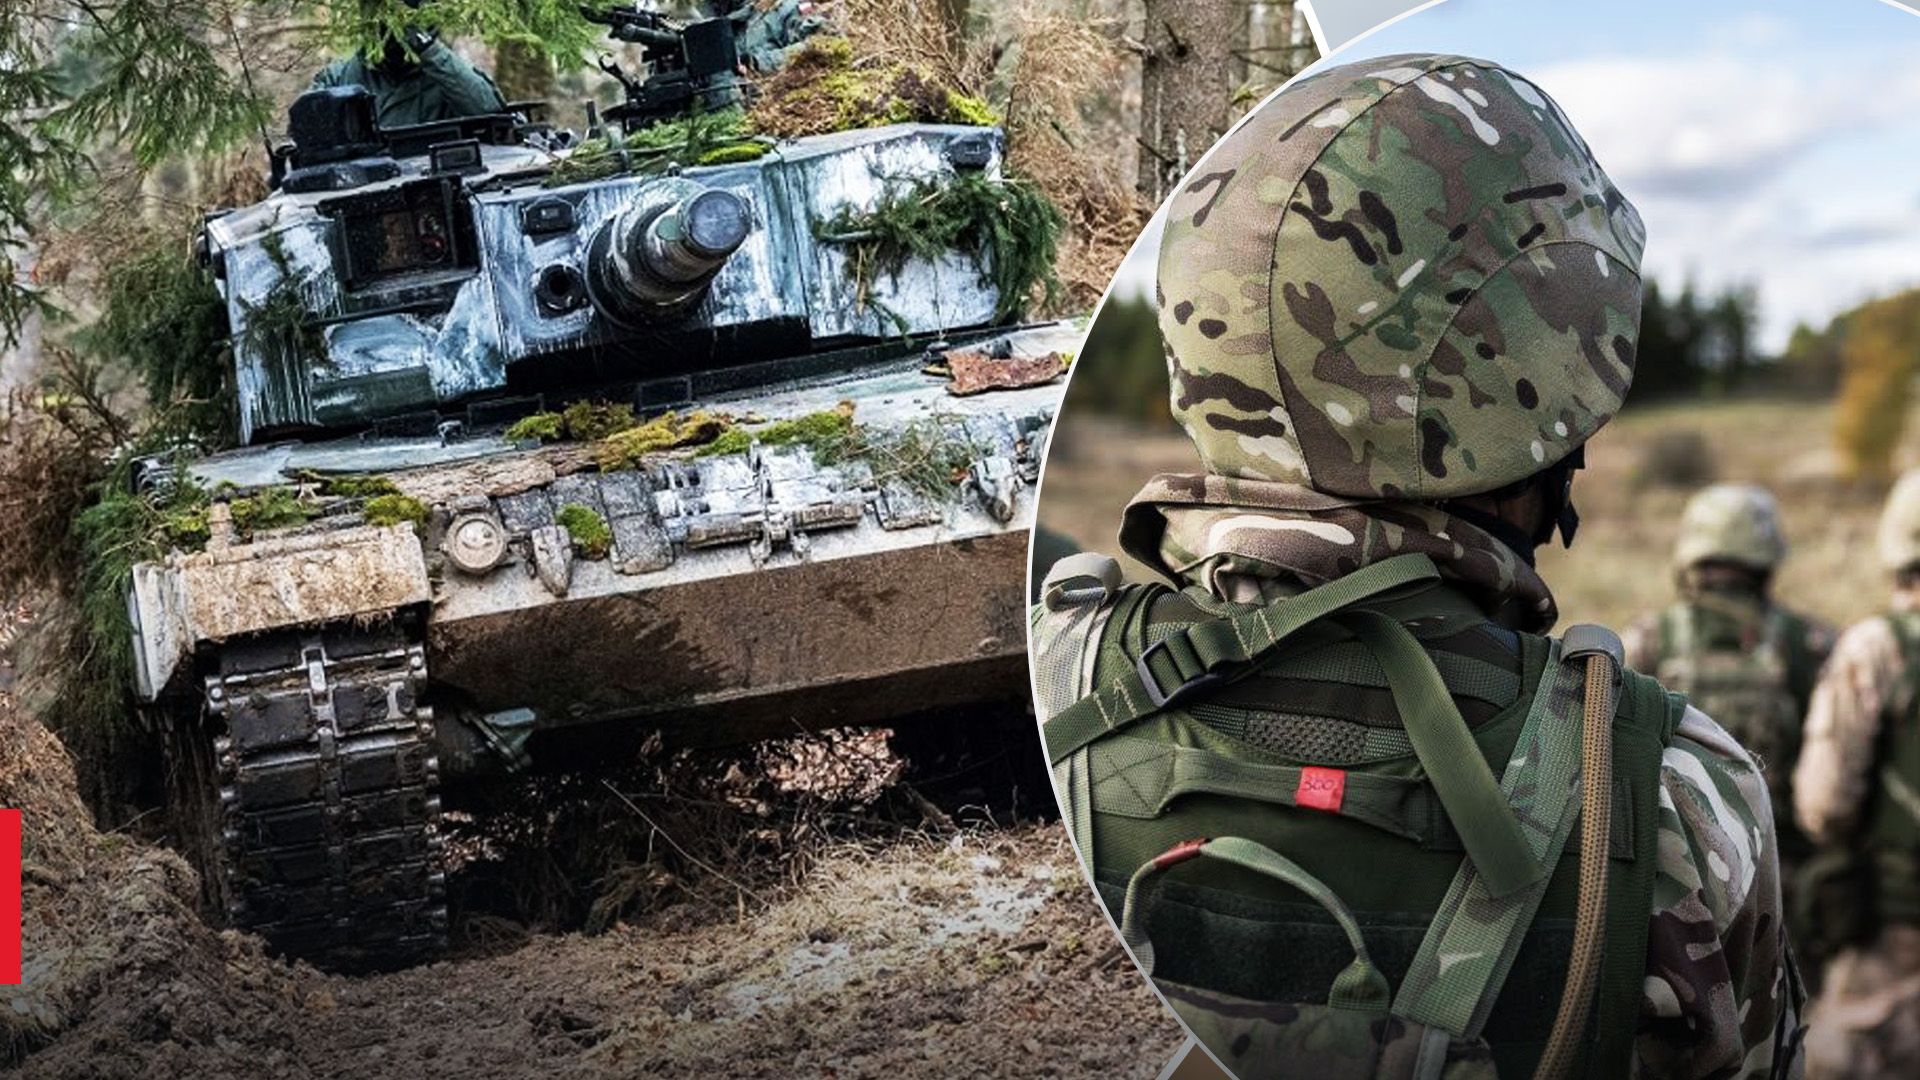 Украинские военные начали обучение на Leopard